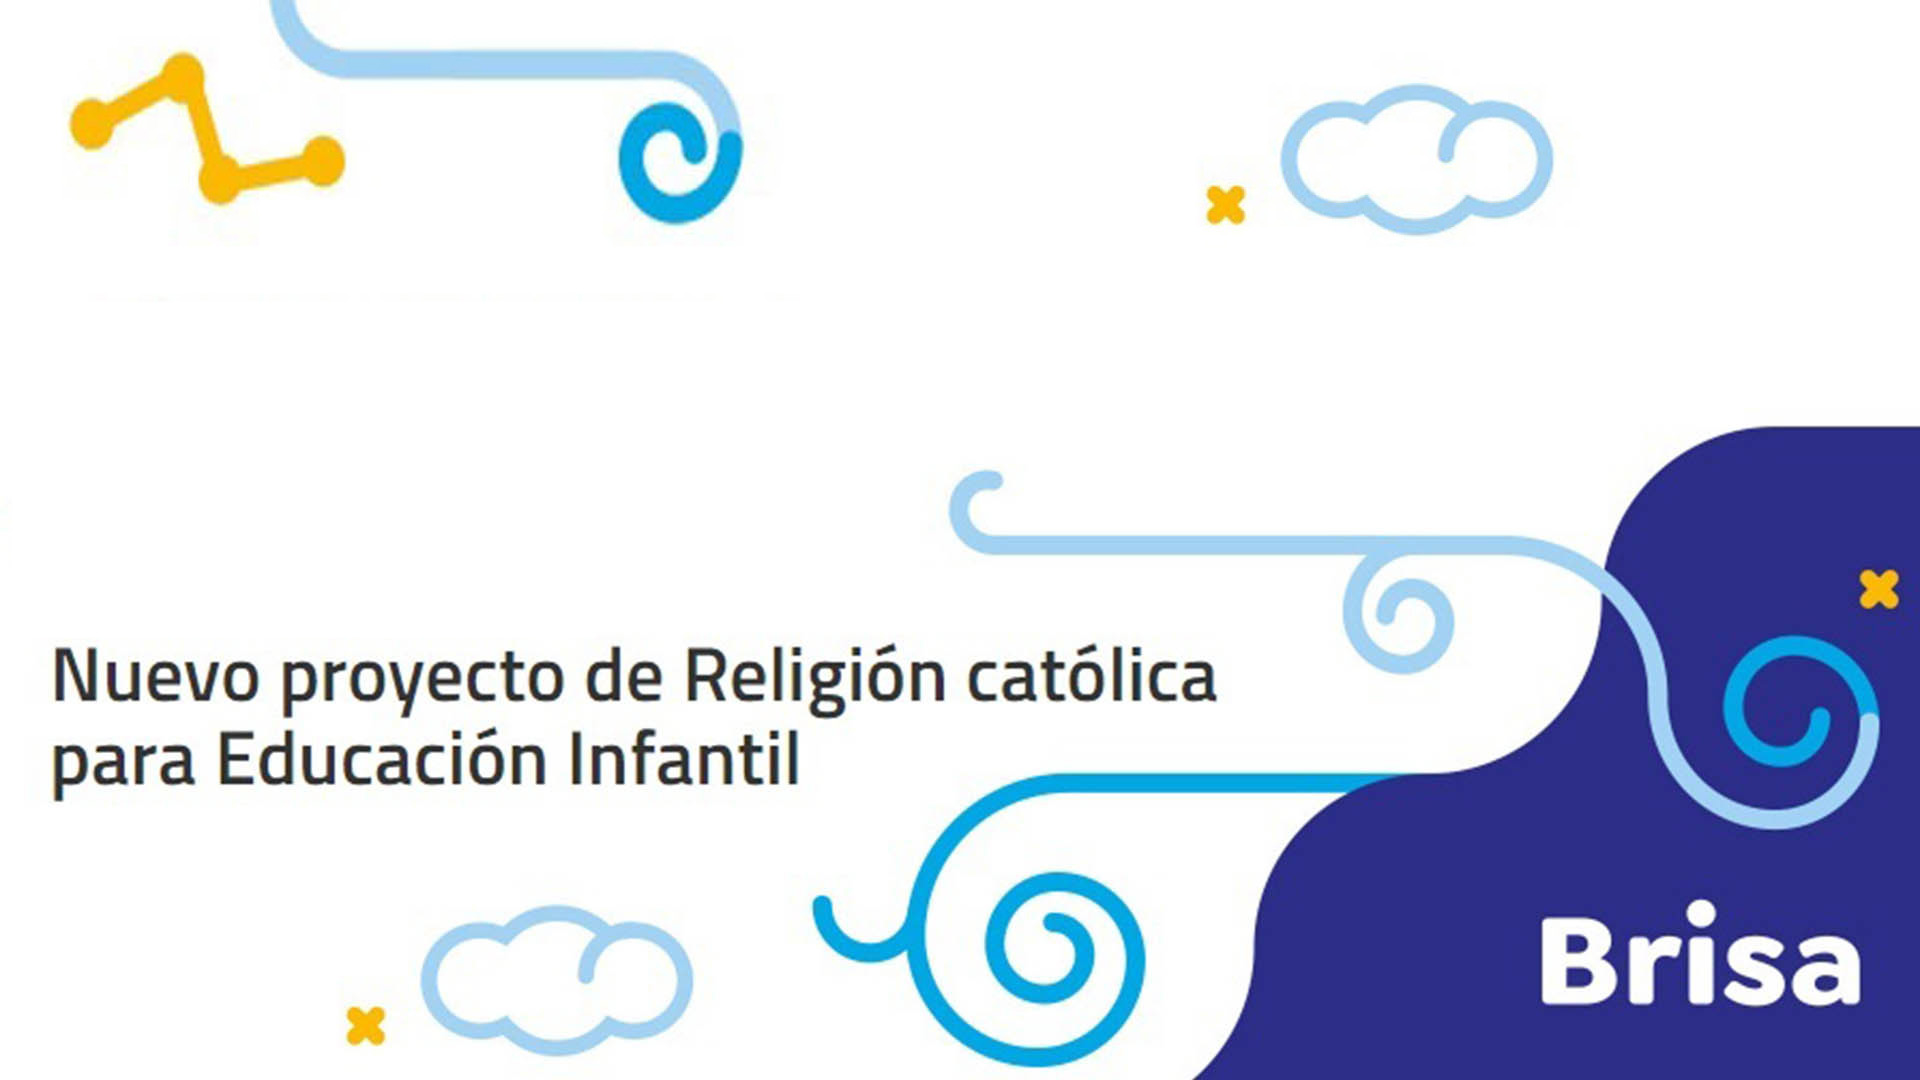 Proyecto Brisa: nuevo proyecto de Religión católica para Educación Infantil